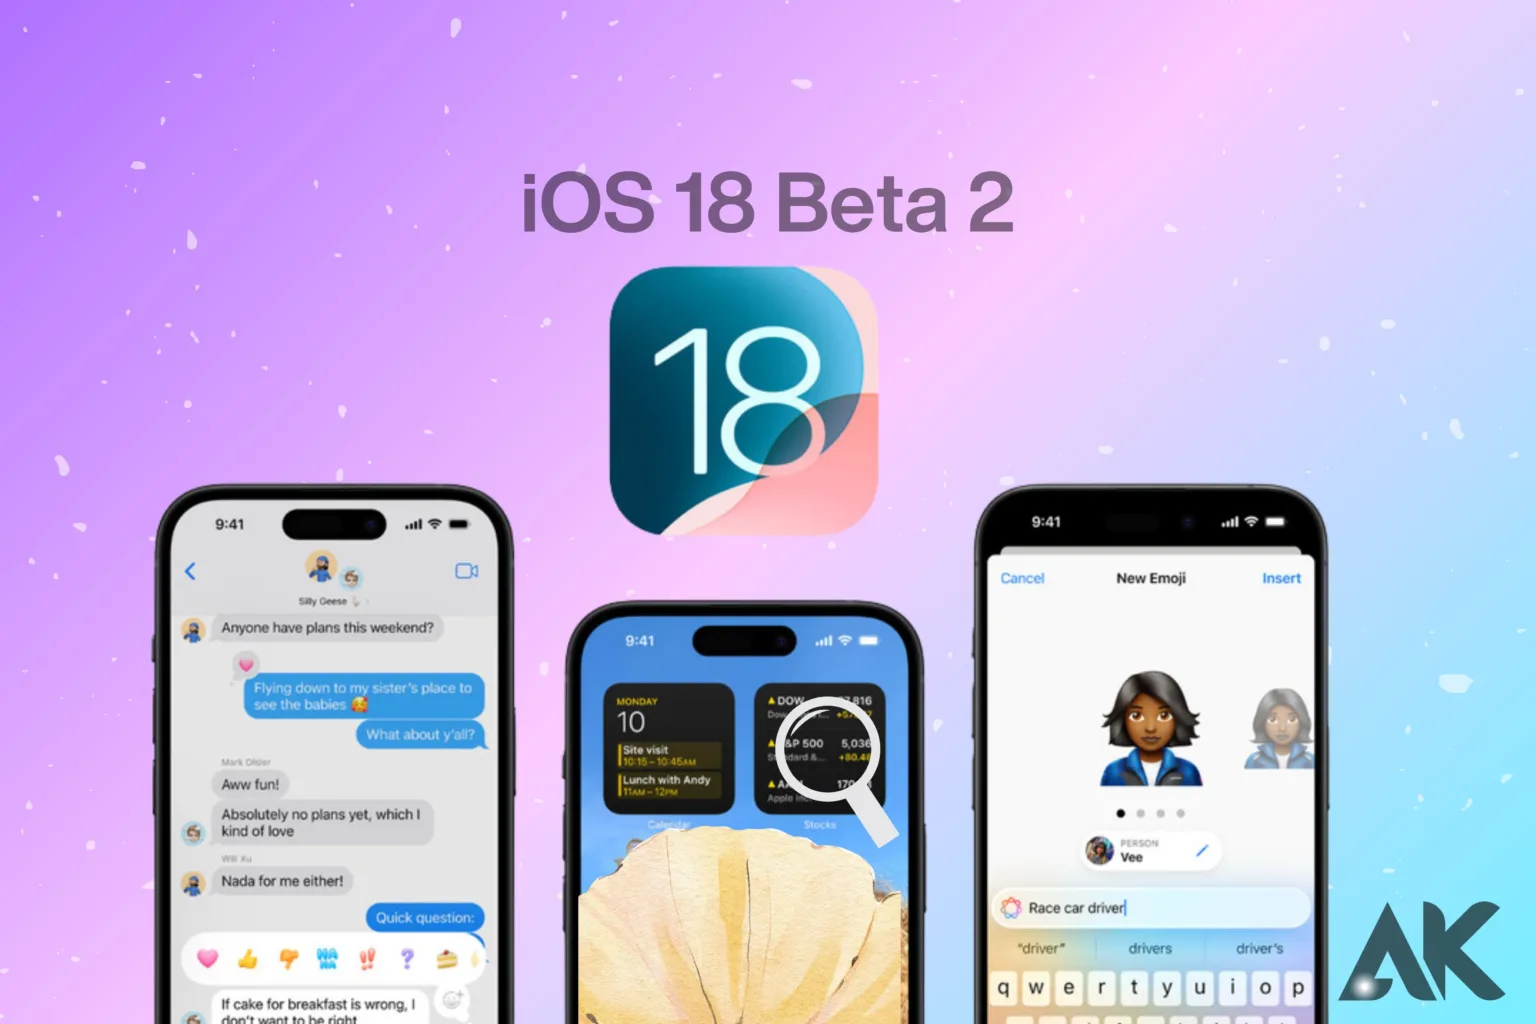 iOS 18 beta 2 features